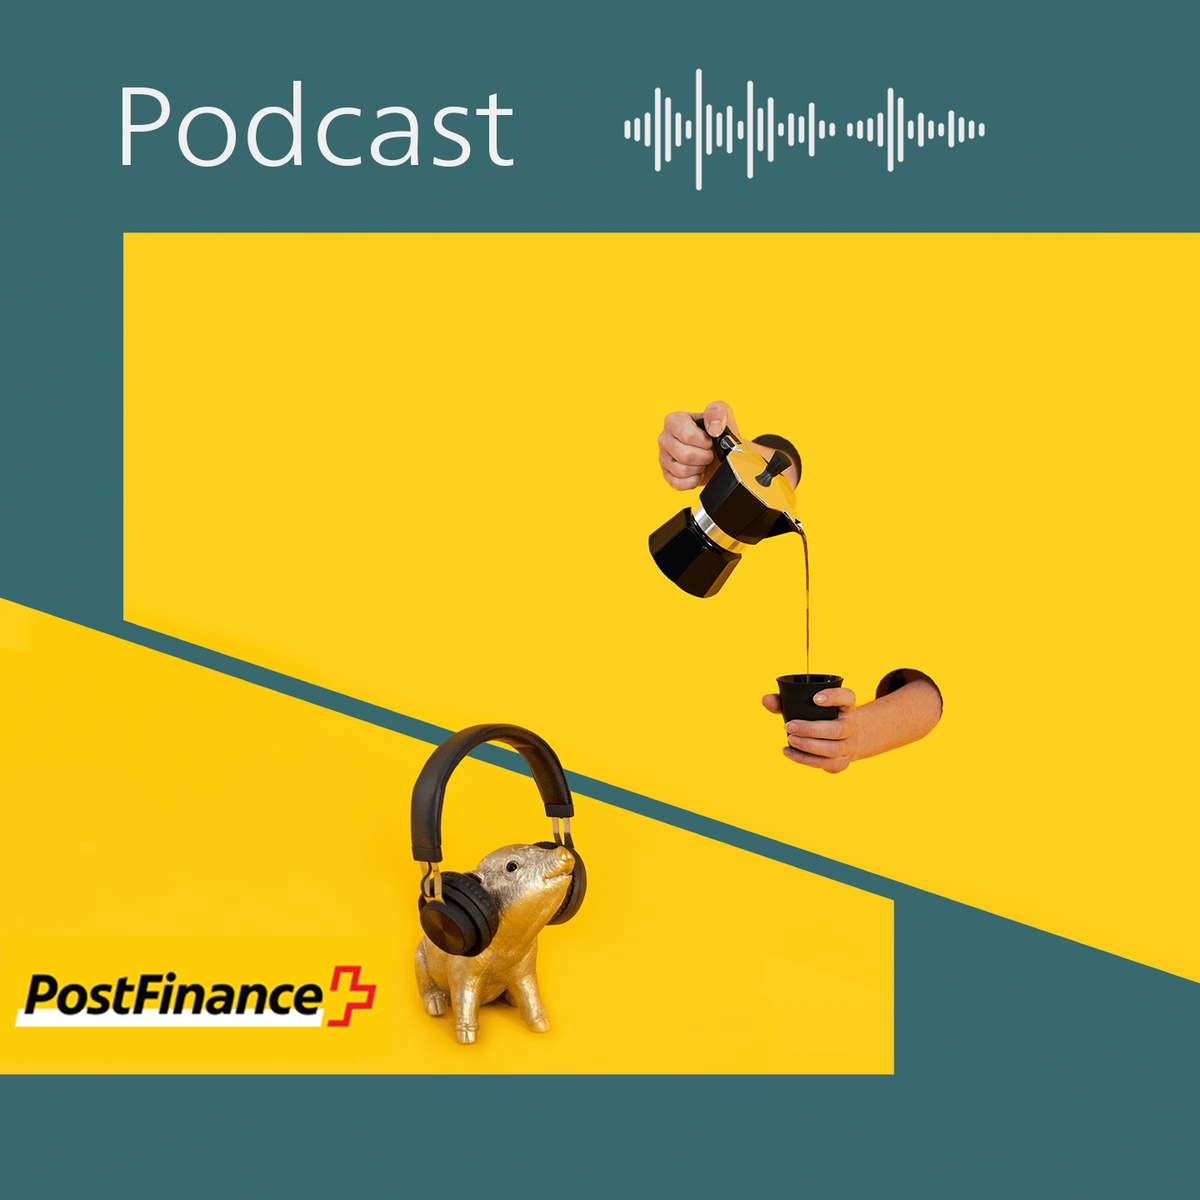 Episode 28: Ende einer Ära: CEO Hansruedi Köng zu Höhepunkten, Herausforderungen und seinem Abschied von PostFinance